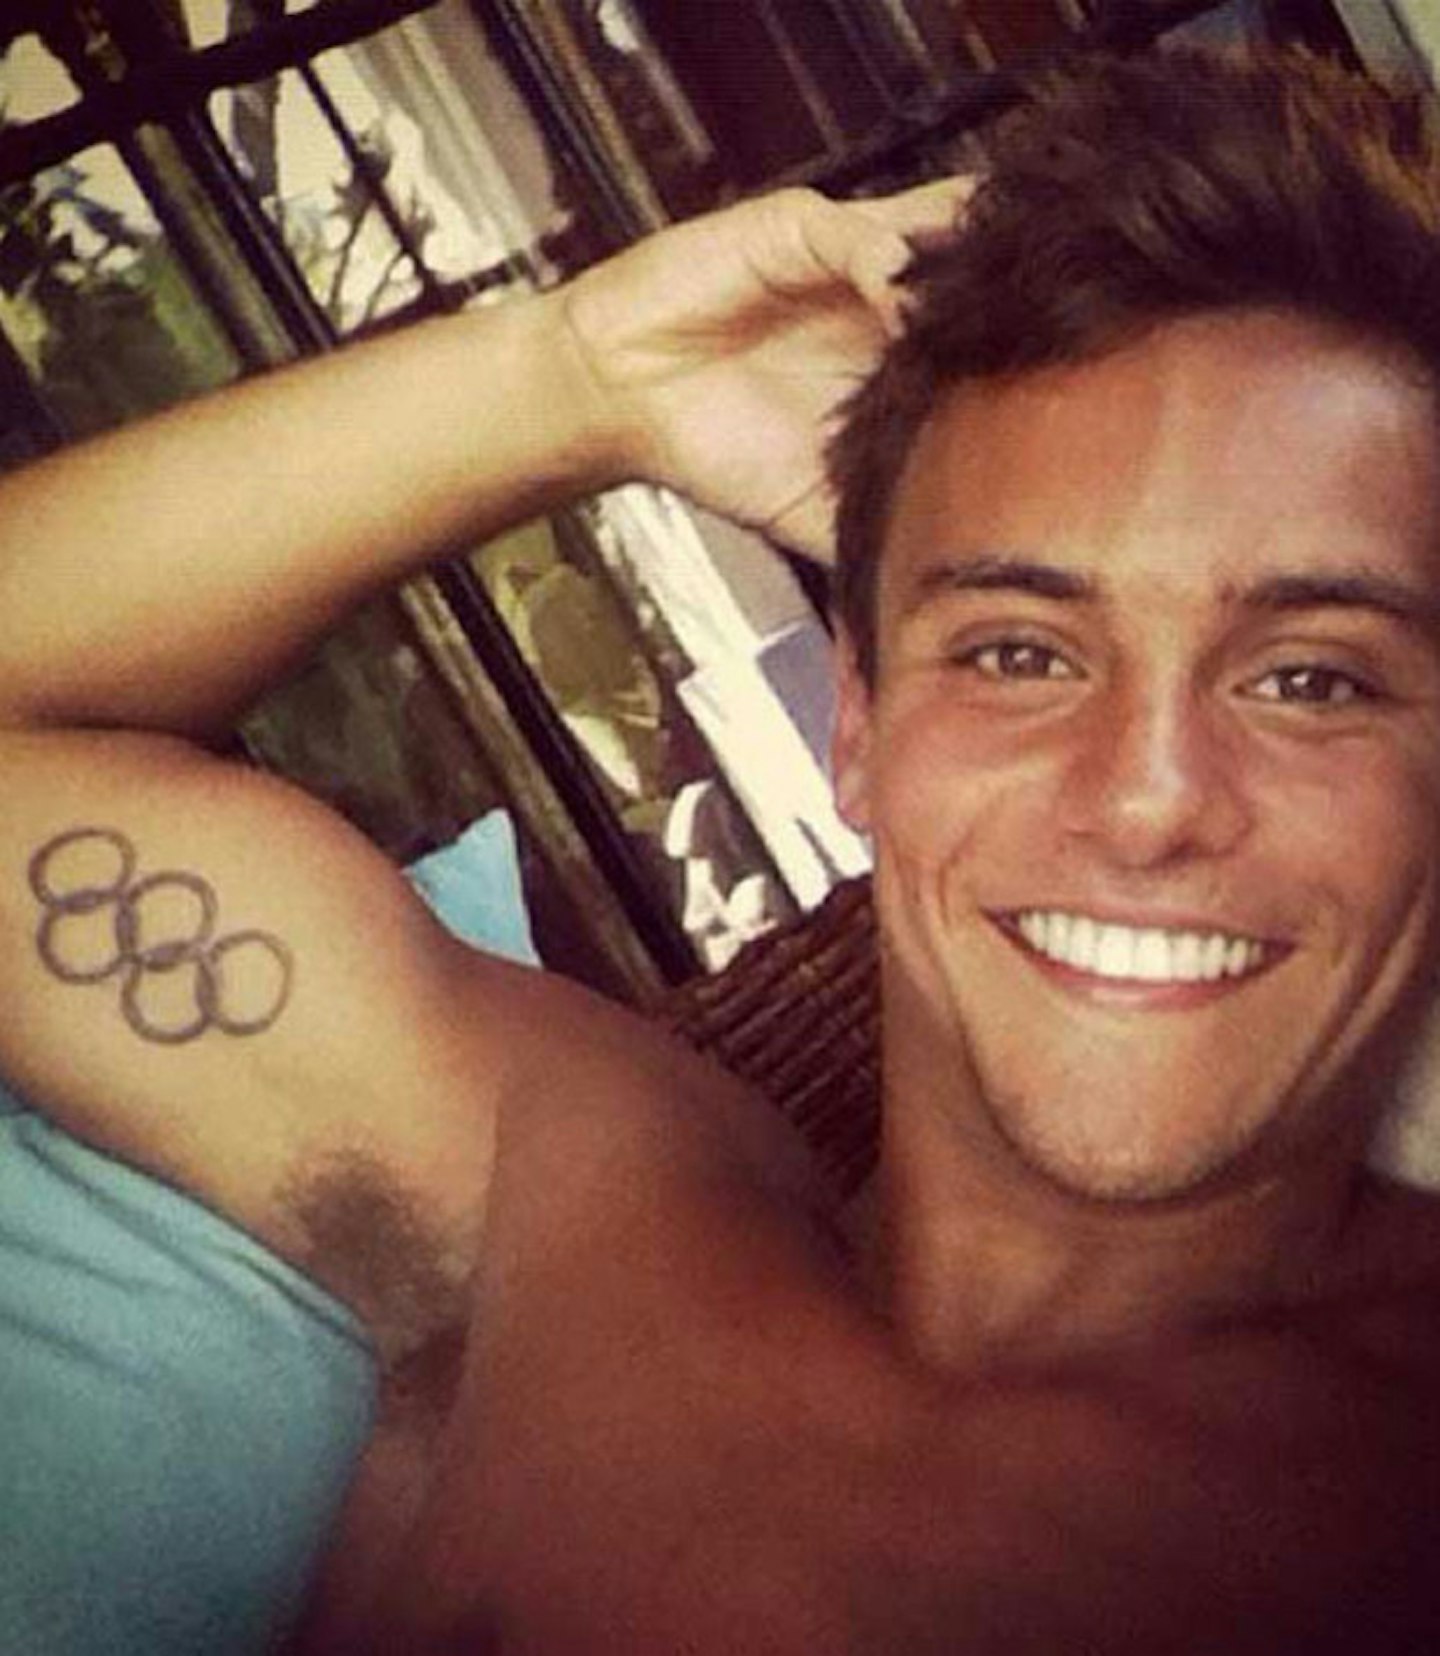 tom-daley-topless-olympics-tattoo